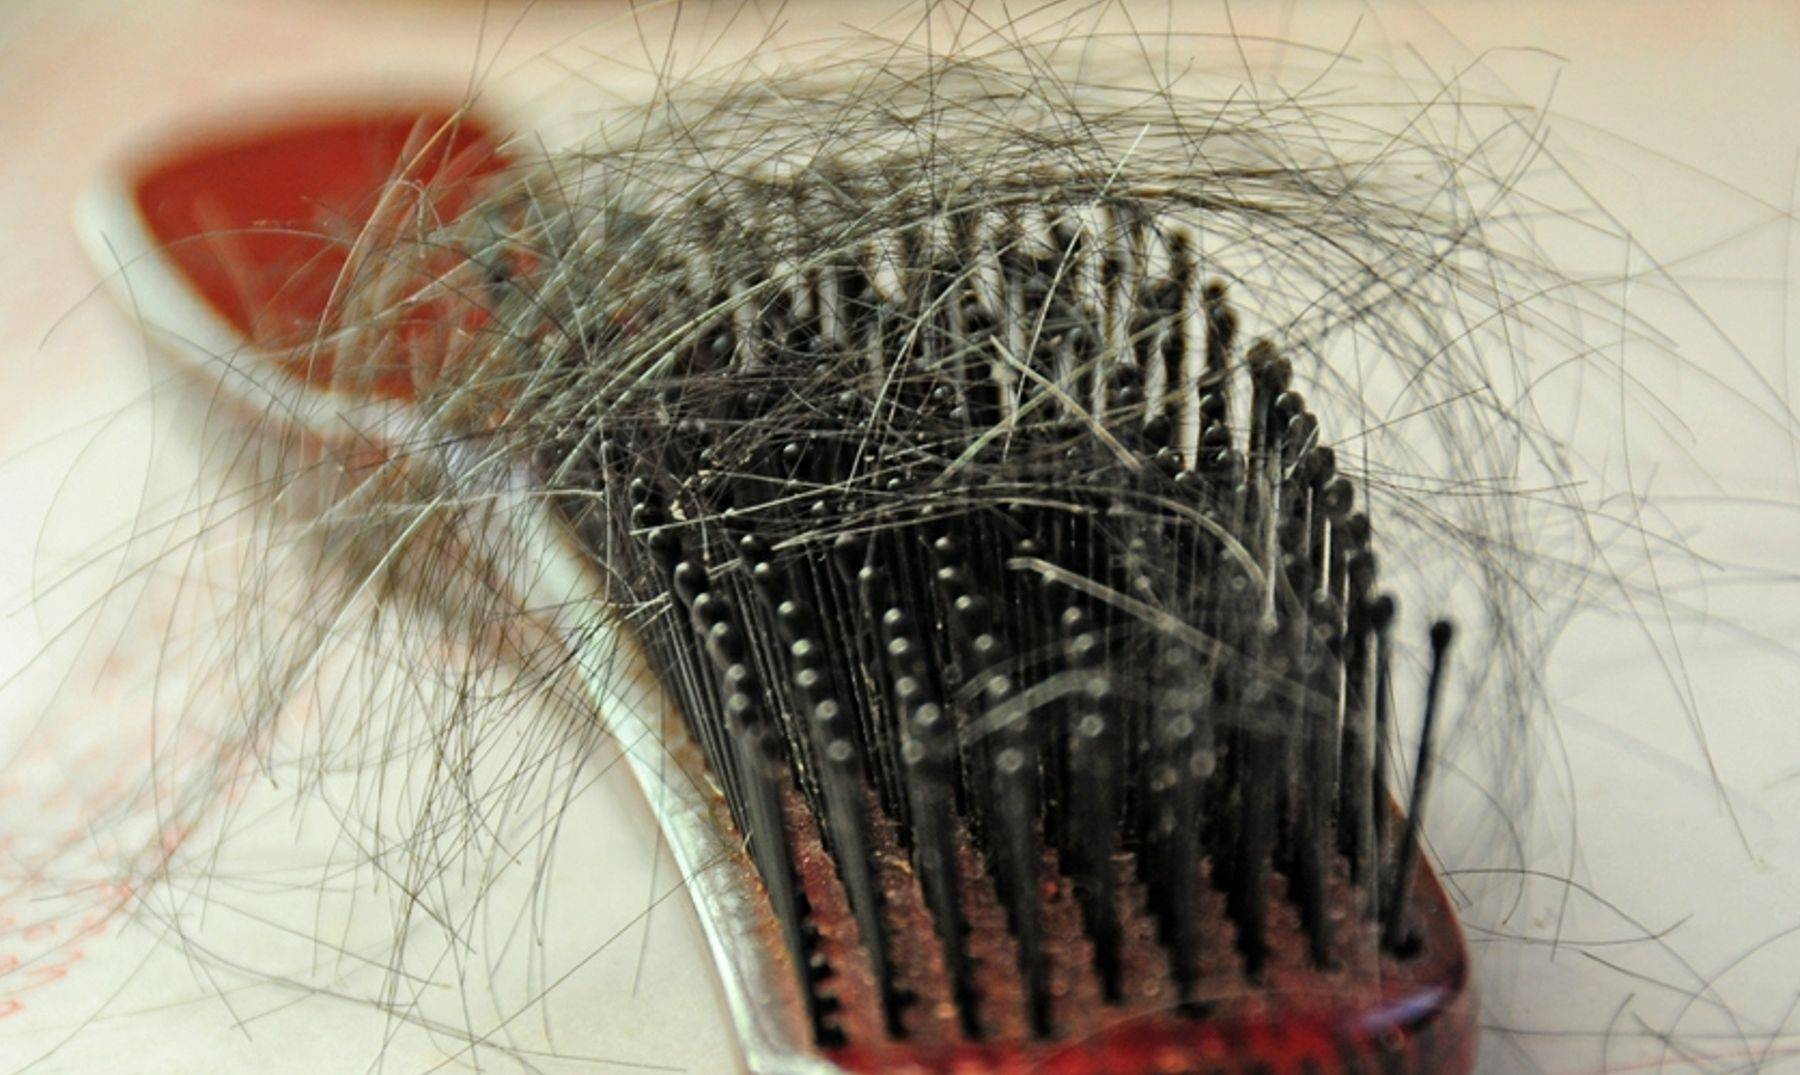 Что делать если волосы из кисточки выпадают